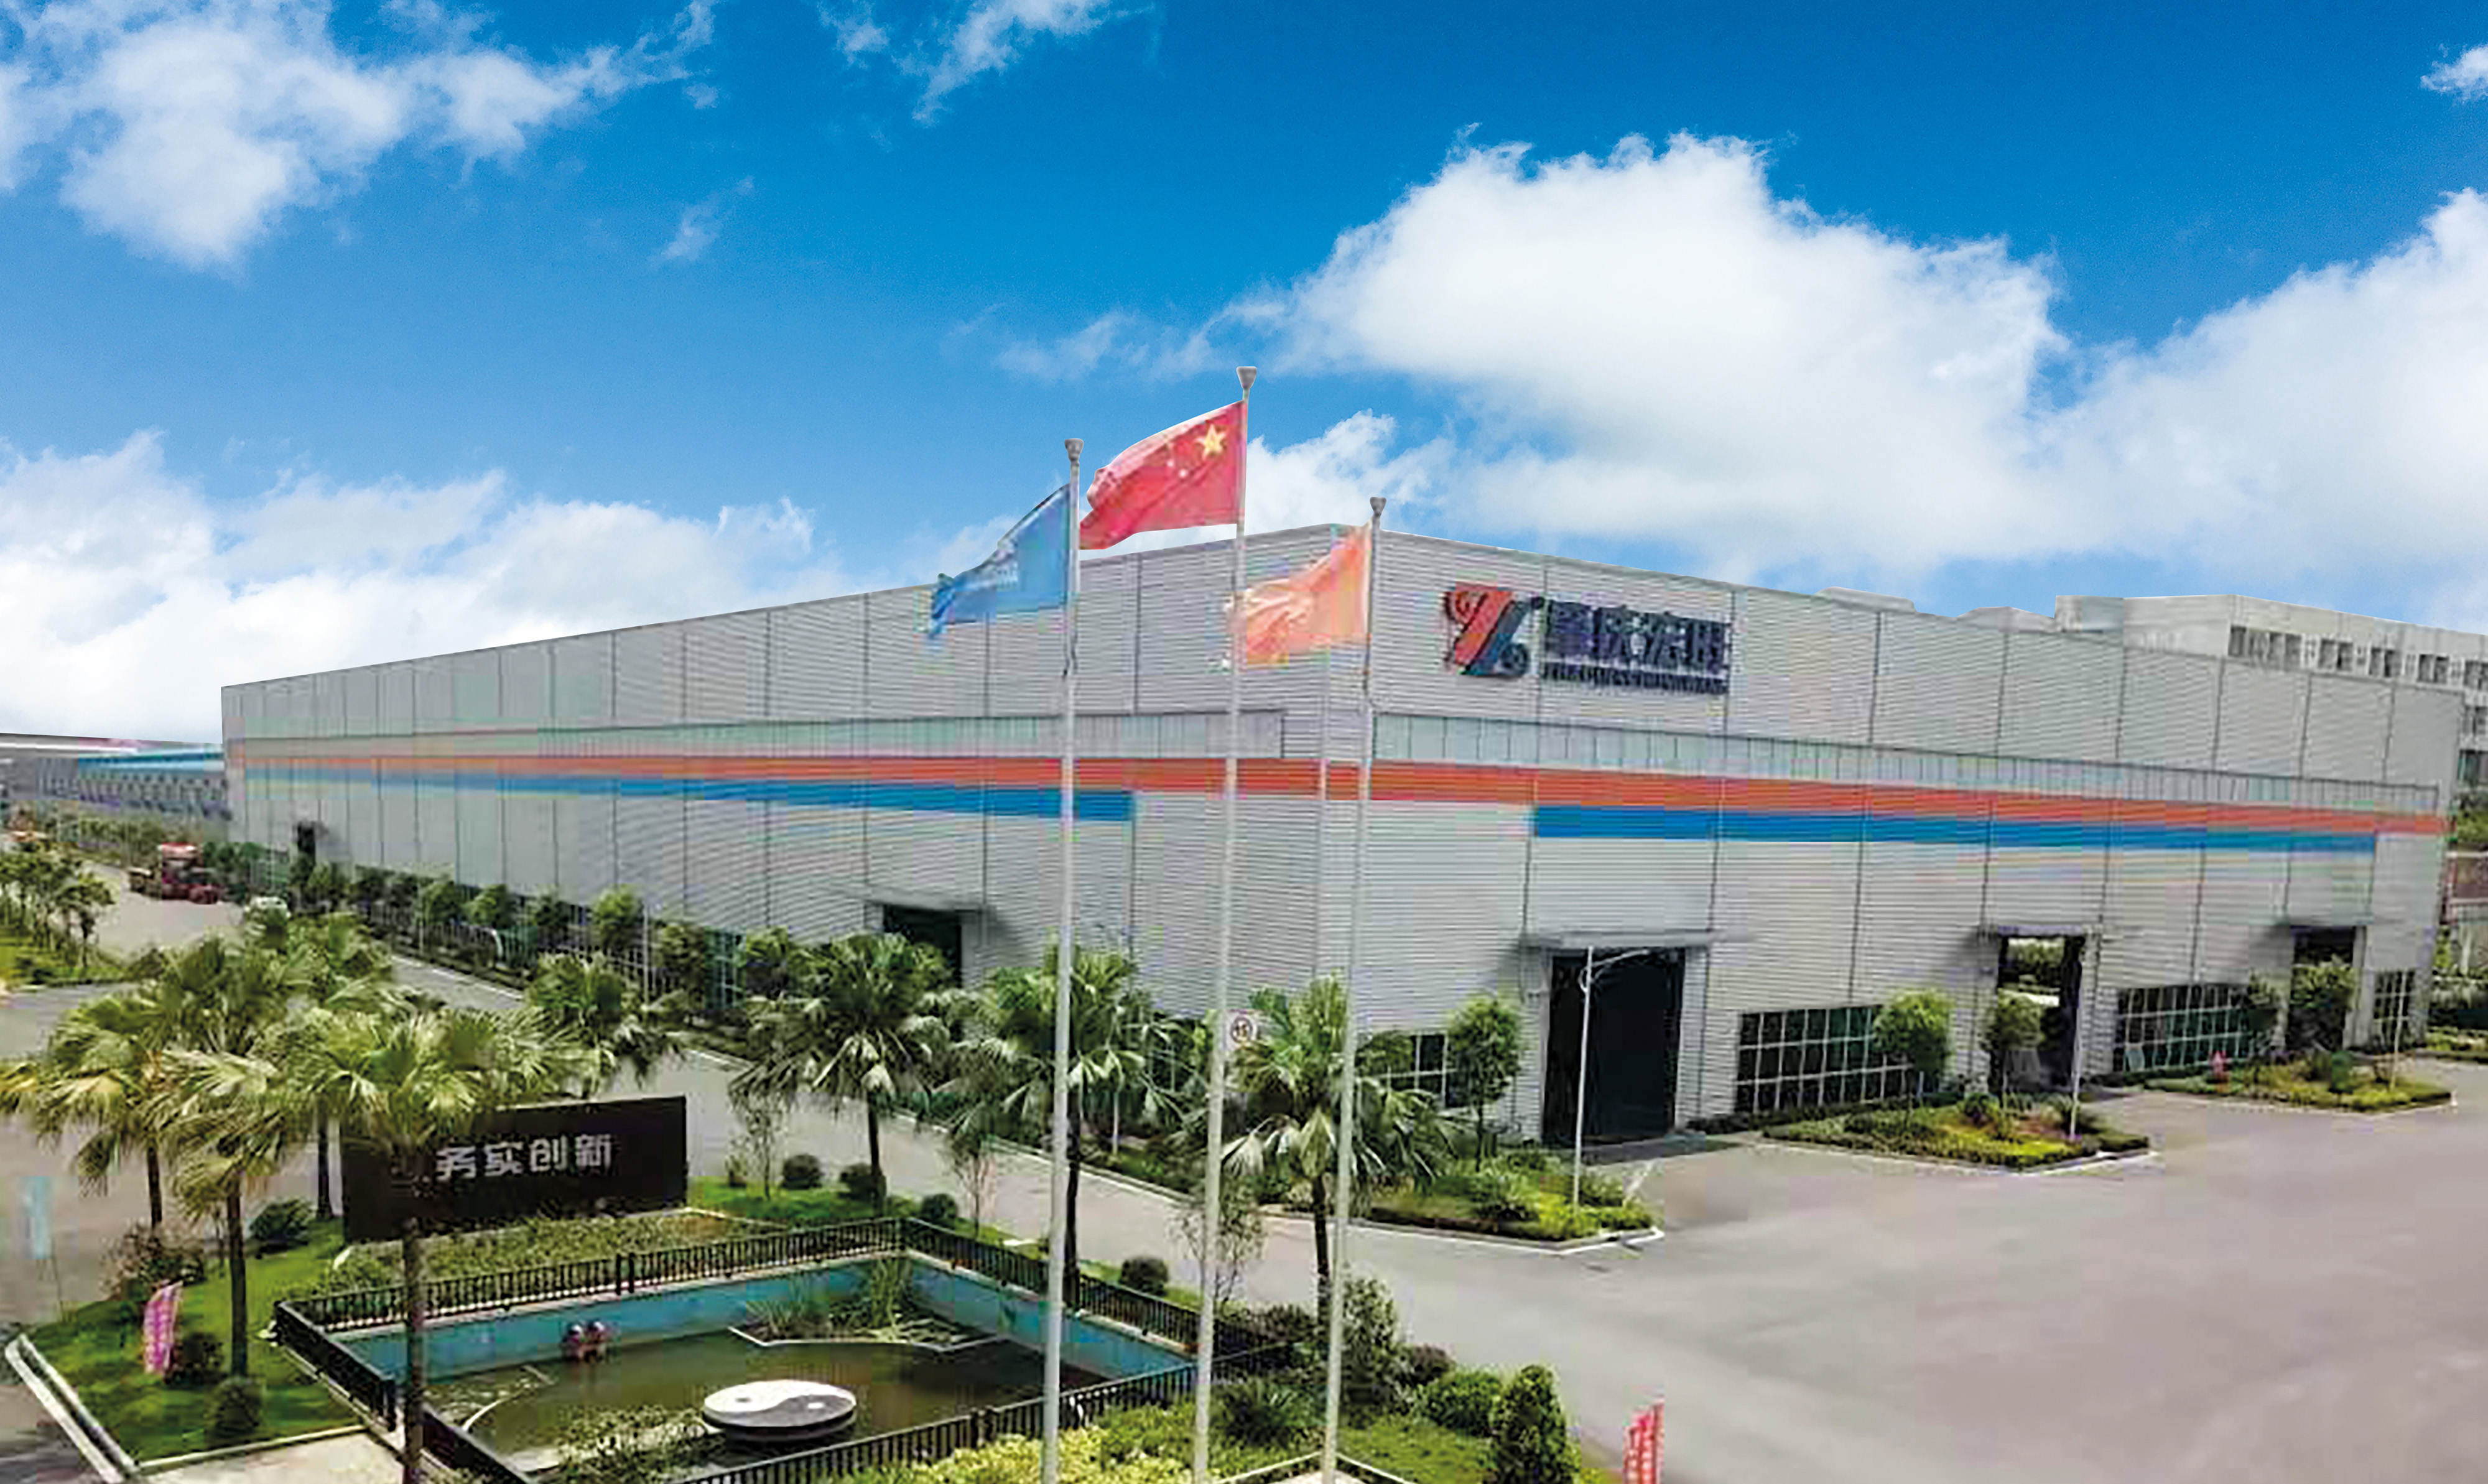 Foshan Hermdeco steel co., LTD., Asutatud 2006. aastal, kuulub hongwangi kontserni ja on rohkem kui 10 aastat pühendunud roostevaba terase uuendustele ja kvaliteedile. Praegu on ettevõte arenenud roostevabast terasest materjalide kujunduse komplektiks , töötlemine ühe suure tervikliku ettevõttena.